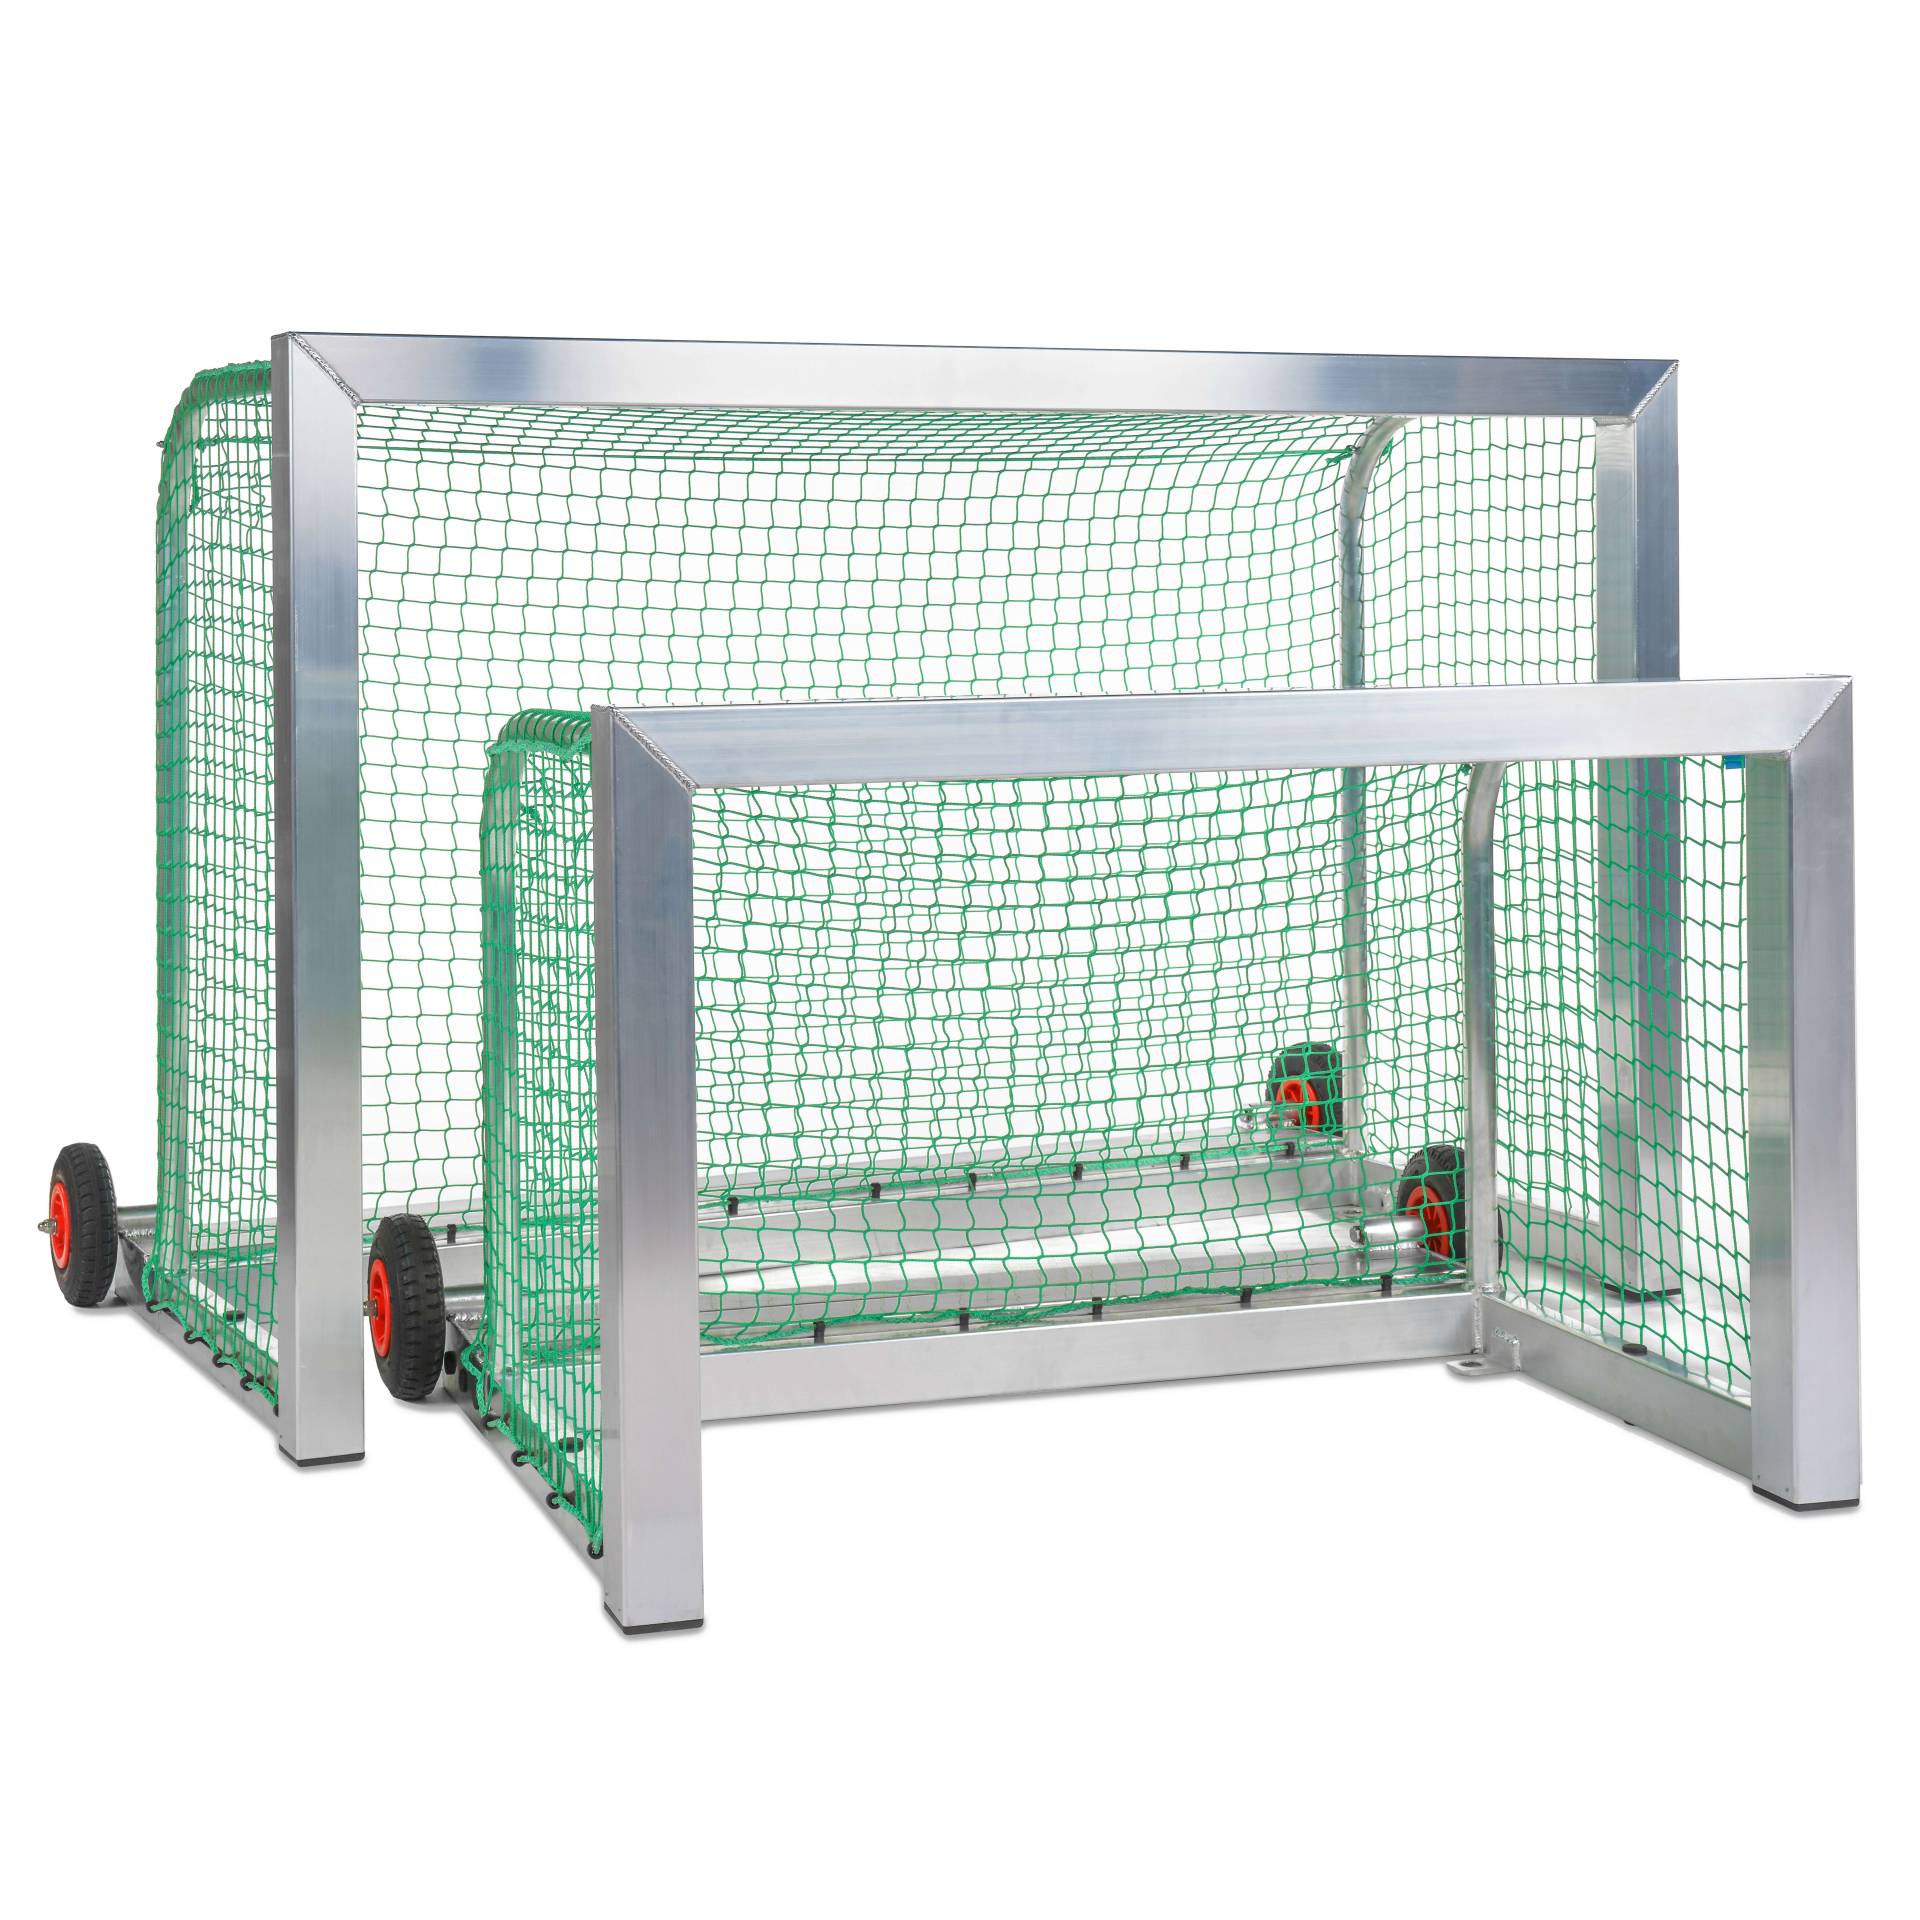 Sport-Thieme Mini-Fußballtor selbstsichernd, Inkl. Netz, grün (MW 4,5 cm), 1,80x1,20 m, Tortiefe 1,05 m von Sport-Thieme